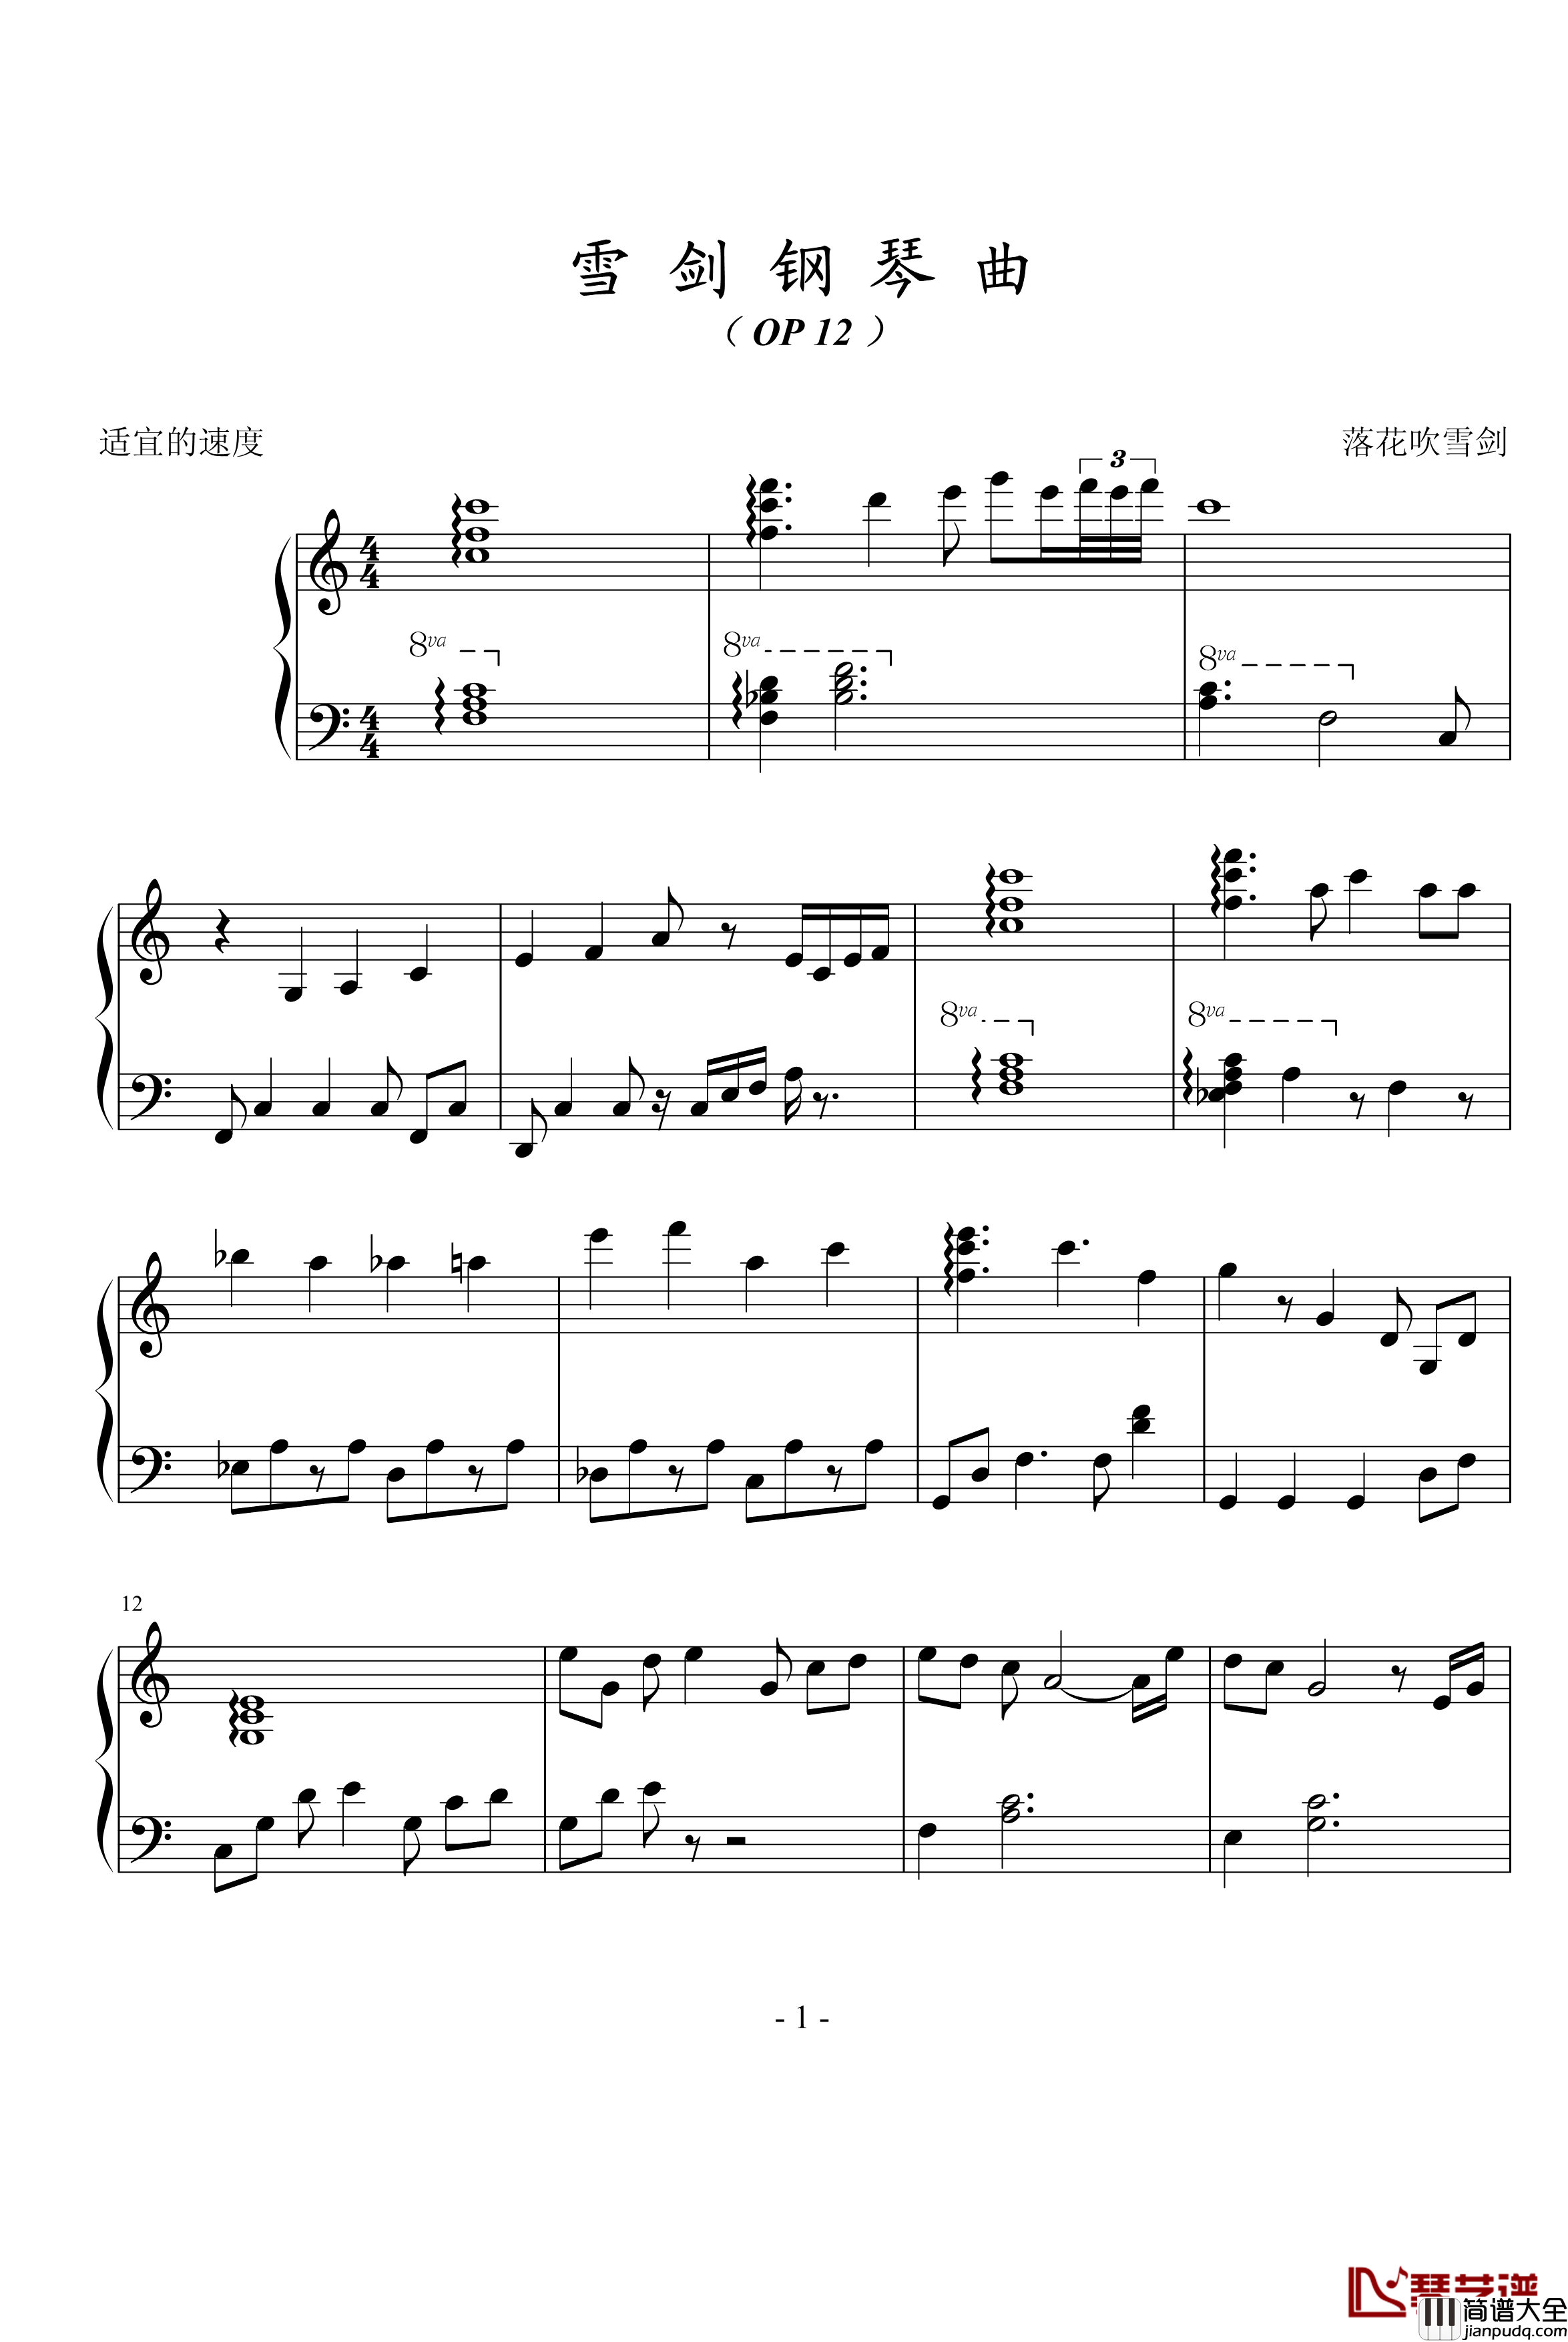 雪剑钢琴曲Op12钢琴谱_落花吹雪剑